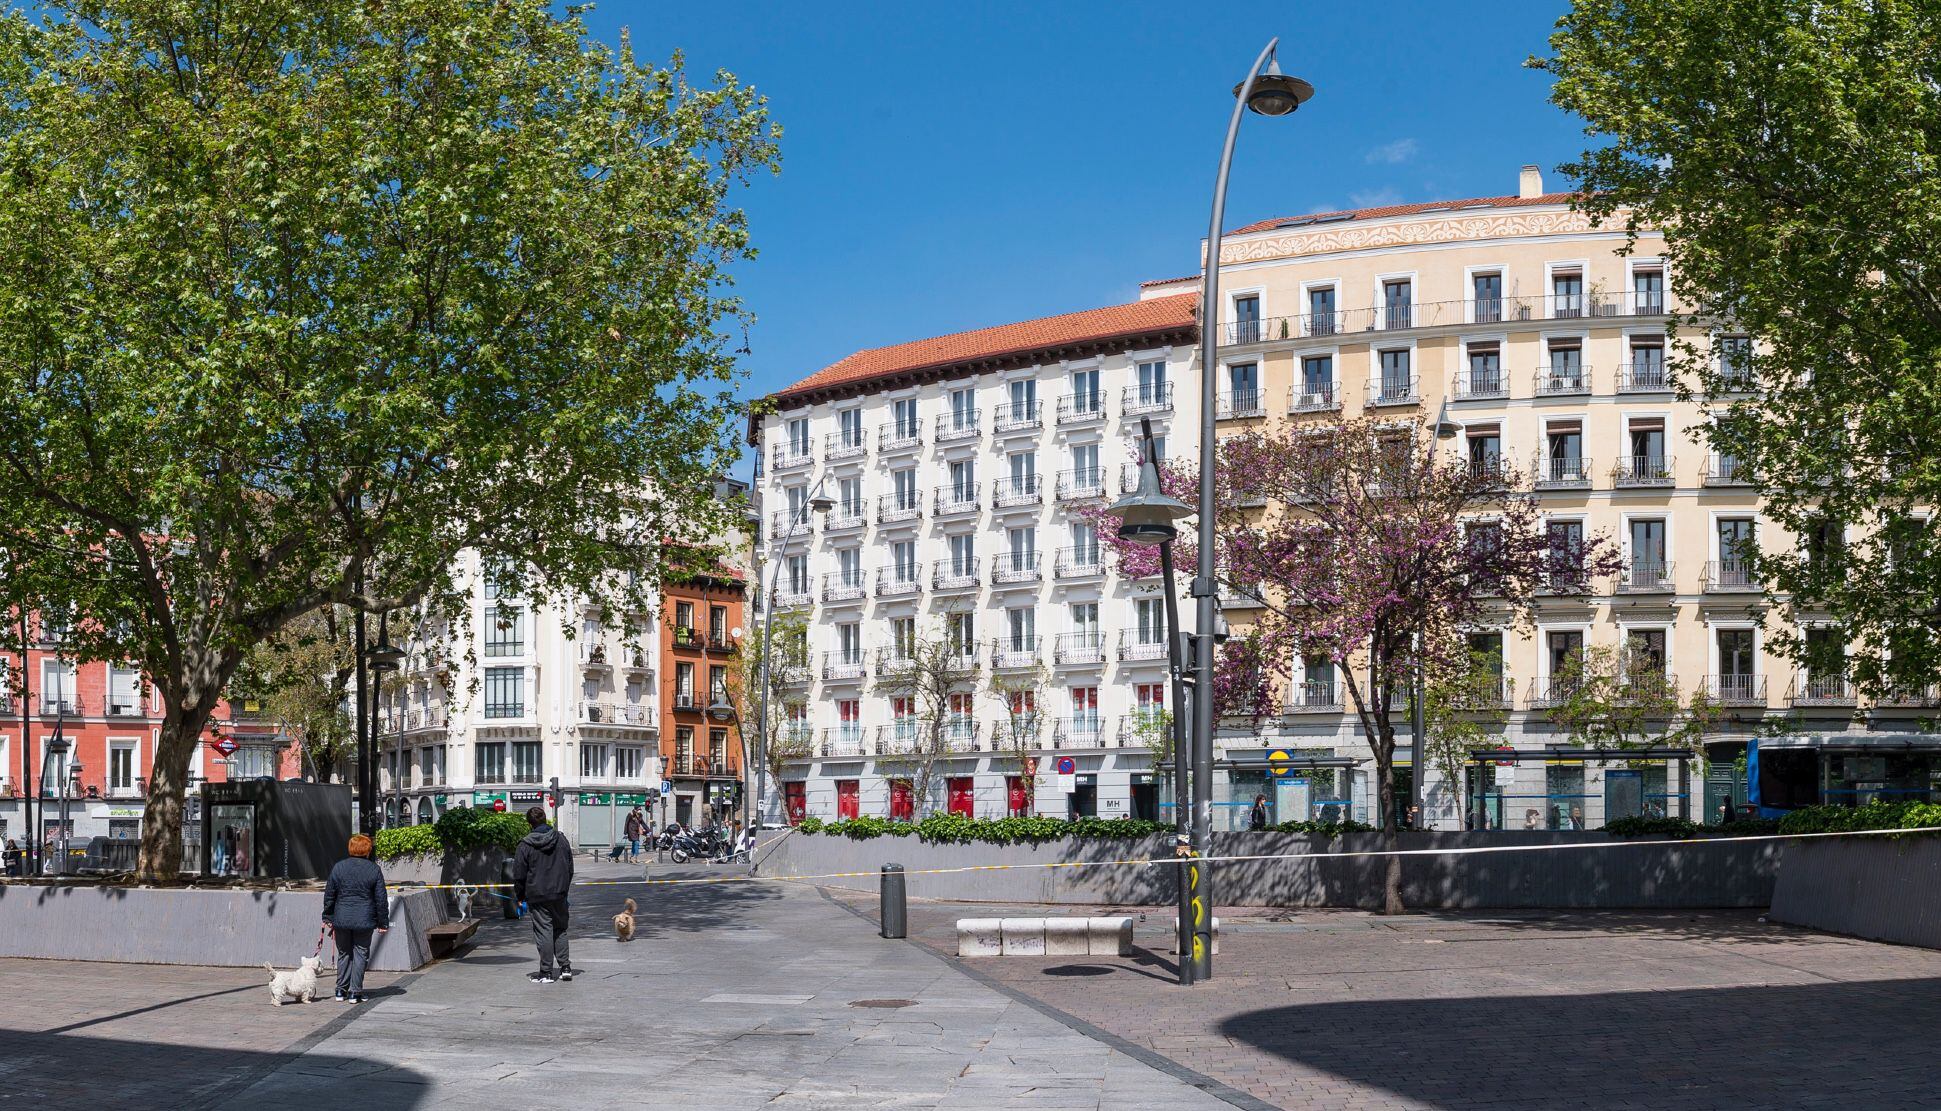 El relieve irregular de los bancos de granito de la plaza Tirso de Molina, Madrid, está explícitamente orientado para evitar que personas sin hogar se tumben en ellos